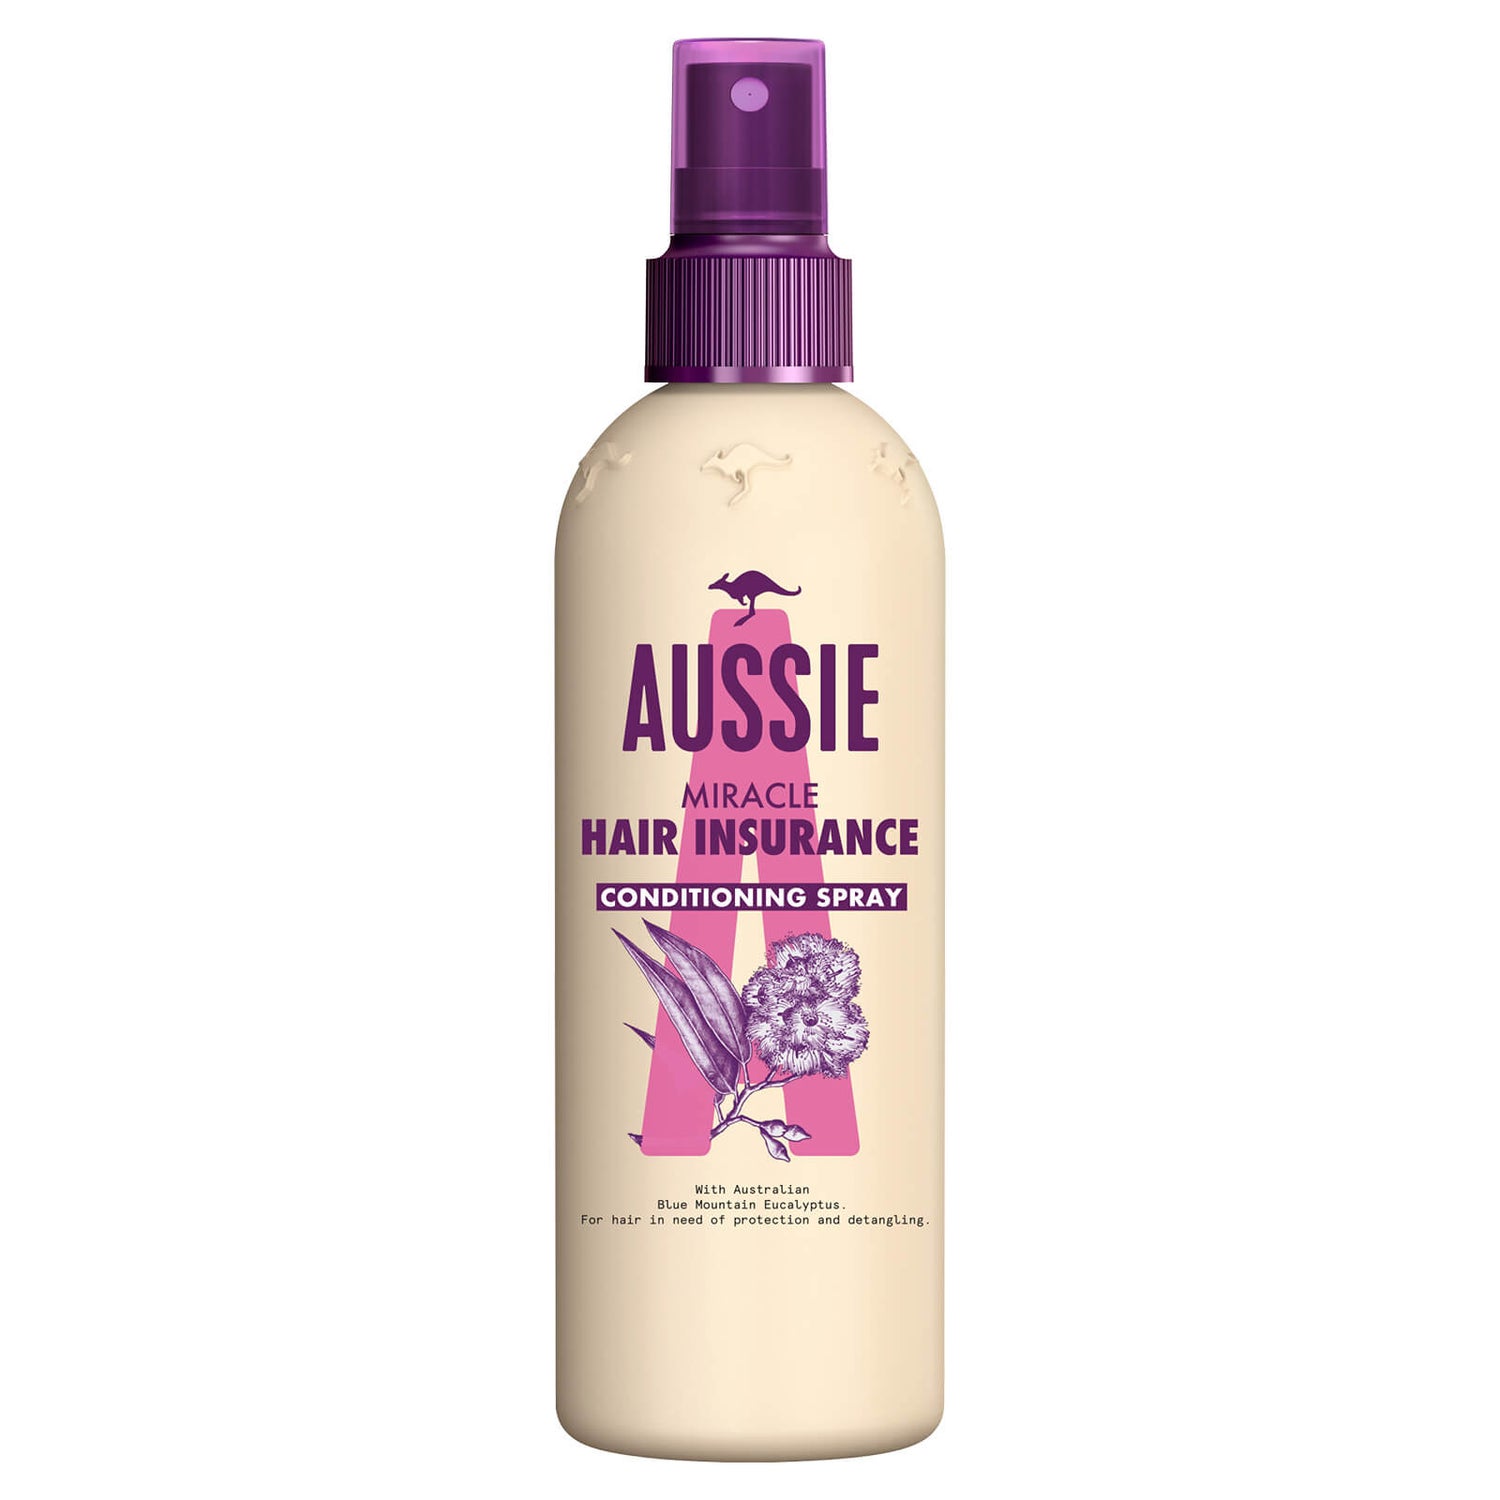 Aussie Hair Insurance Leave-in Hair Conditioner Spray 250 ml